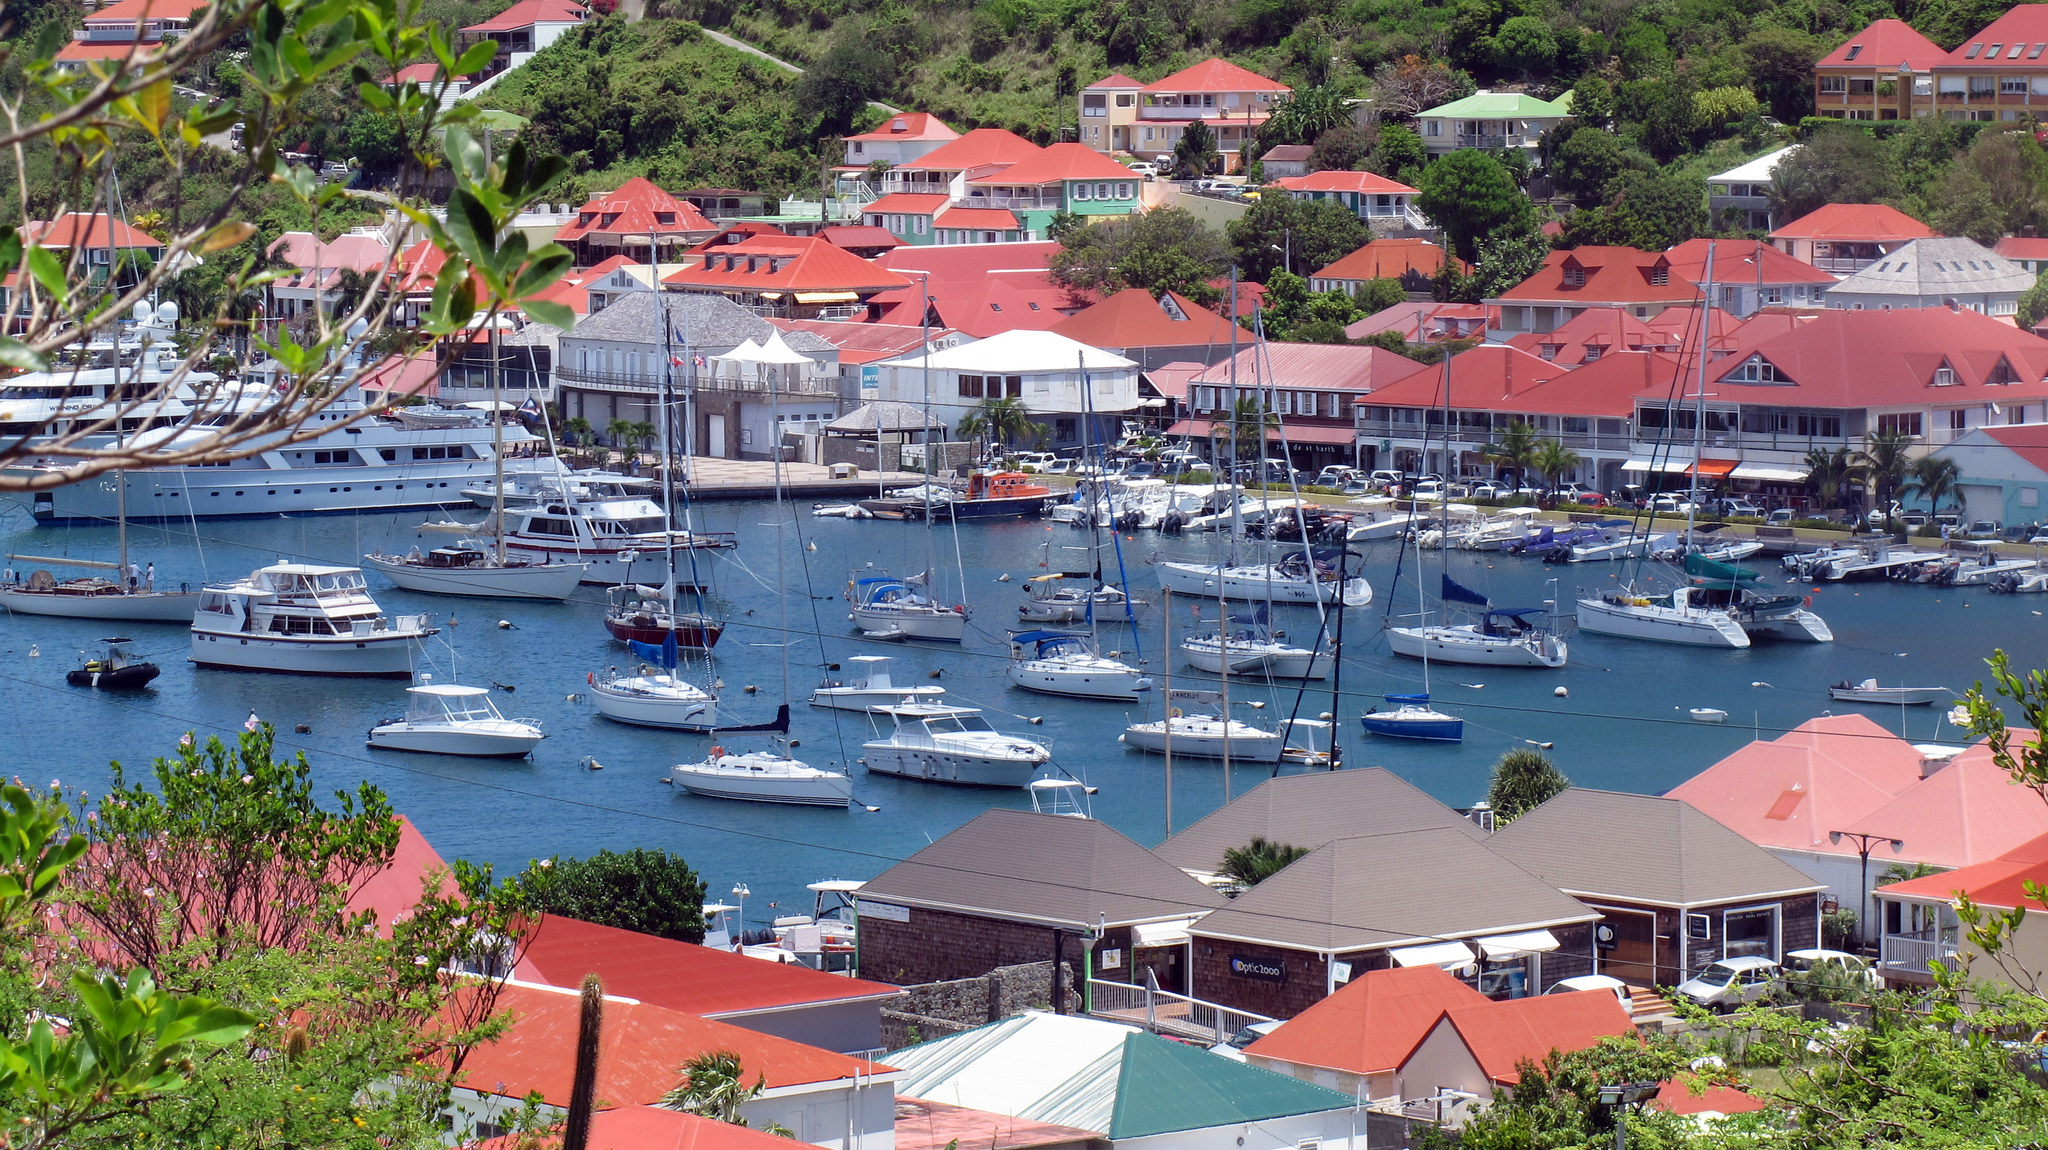 St. Barts là một hòn đảo thuộc vùng Caribe vốn chỉ có 24 khách sạn